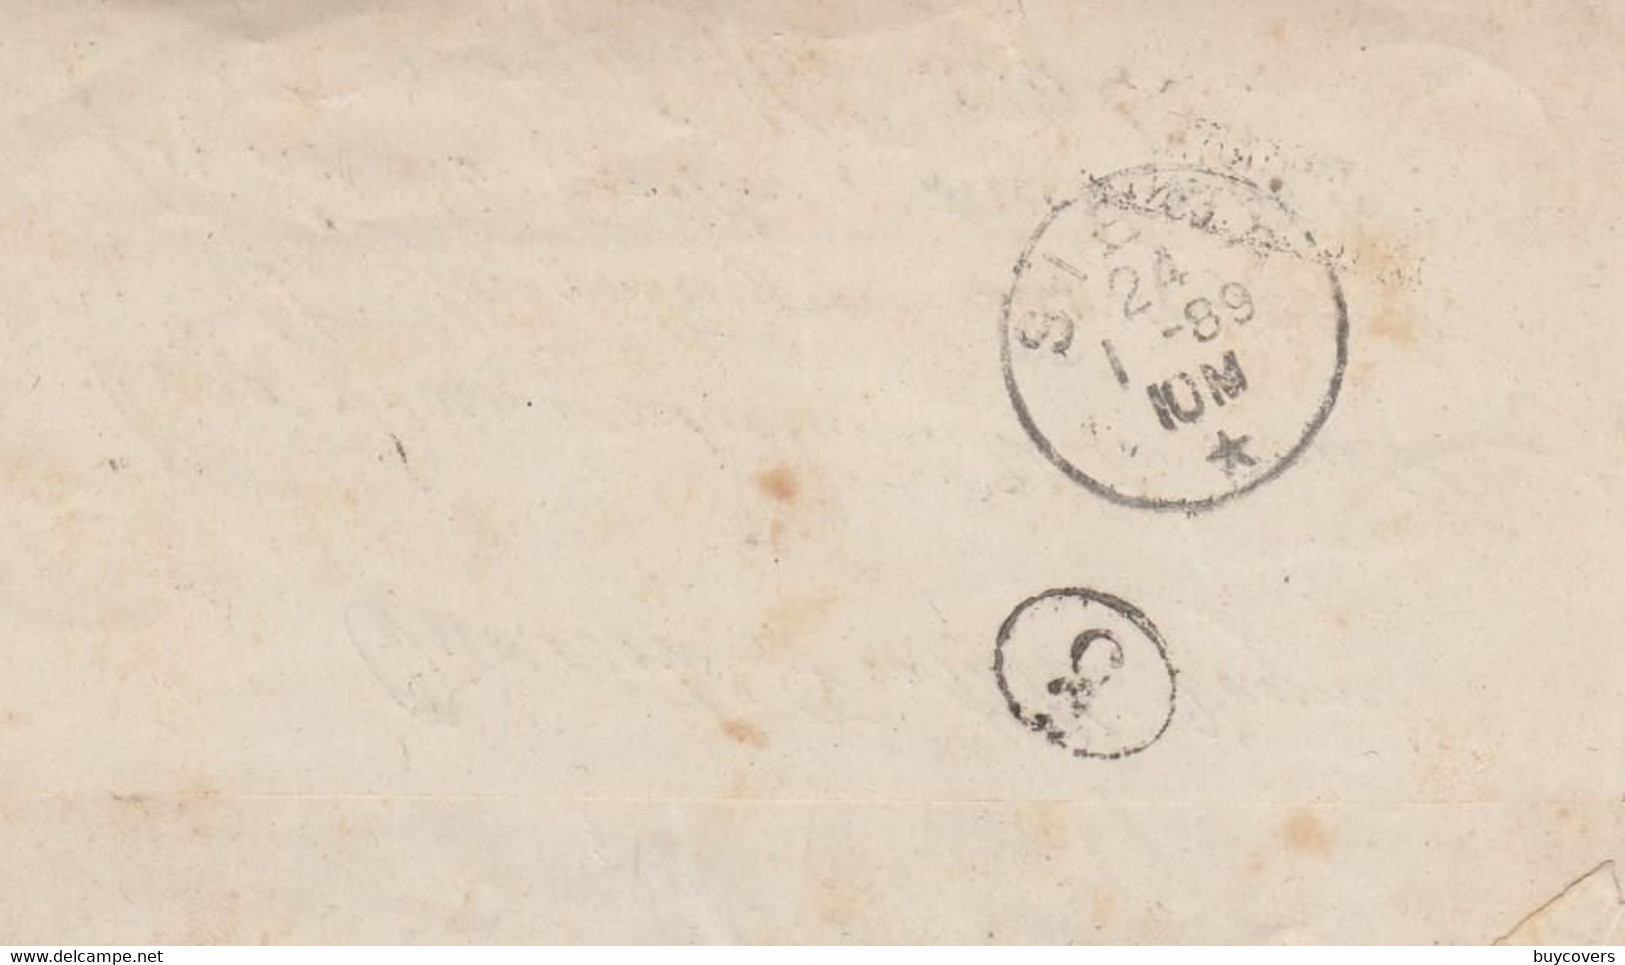 1552 - Lettera Del 1889 Da Torino A Siena Con Cent. 2 DLR Tassata 28 Cent. Assolti Con Segnatasse - Segnatasse